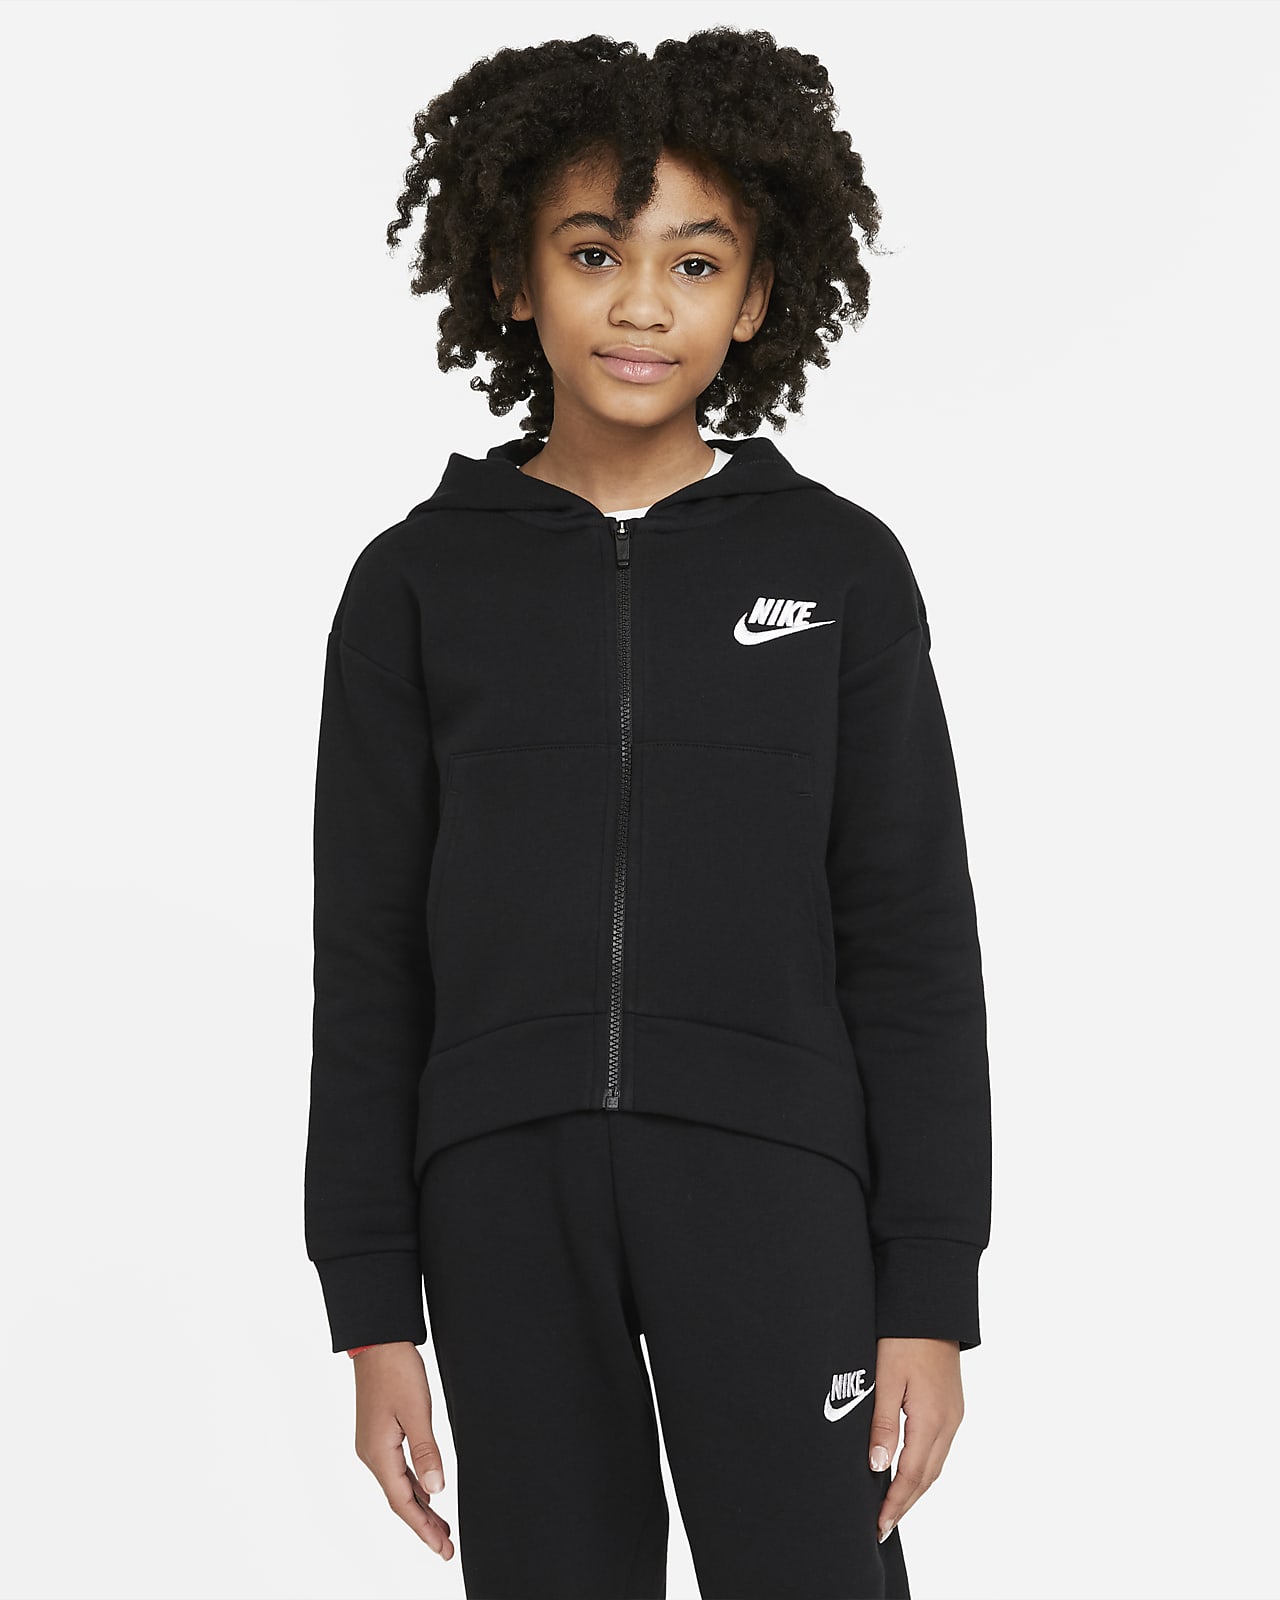 Μπλούζα με κουκούλα και φερμουάρ σε όλο το μήκος Nike Sportswear Club Fleece για μεγάλα κορίτσια